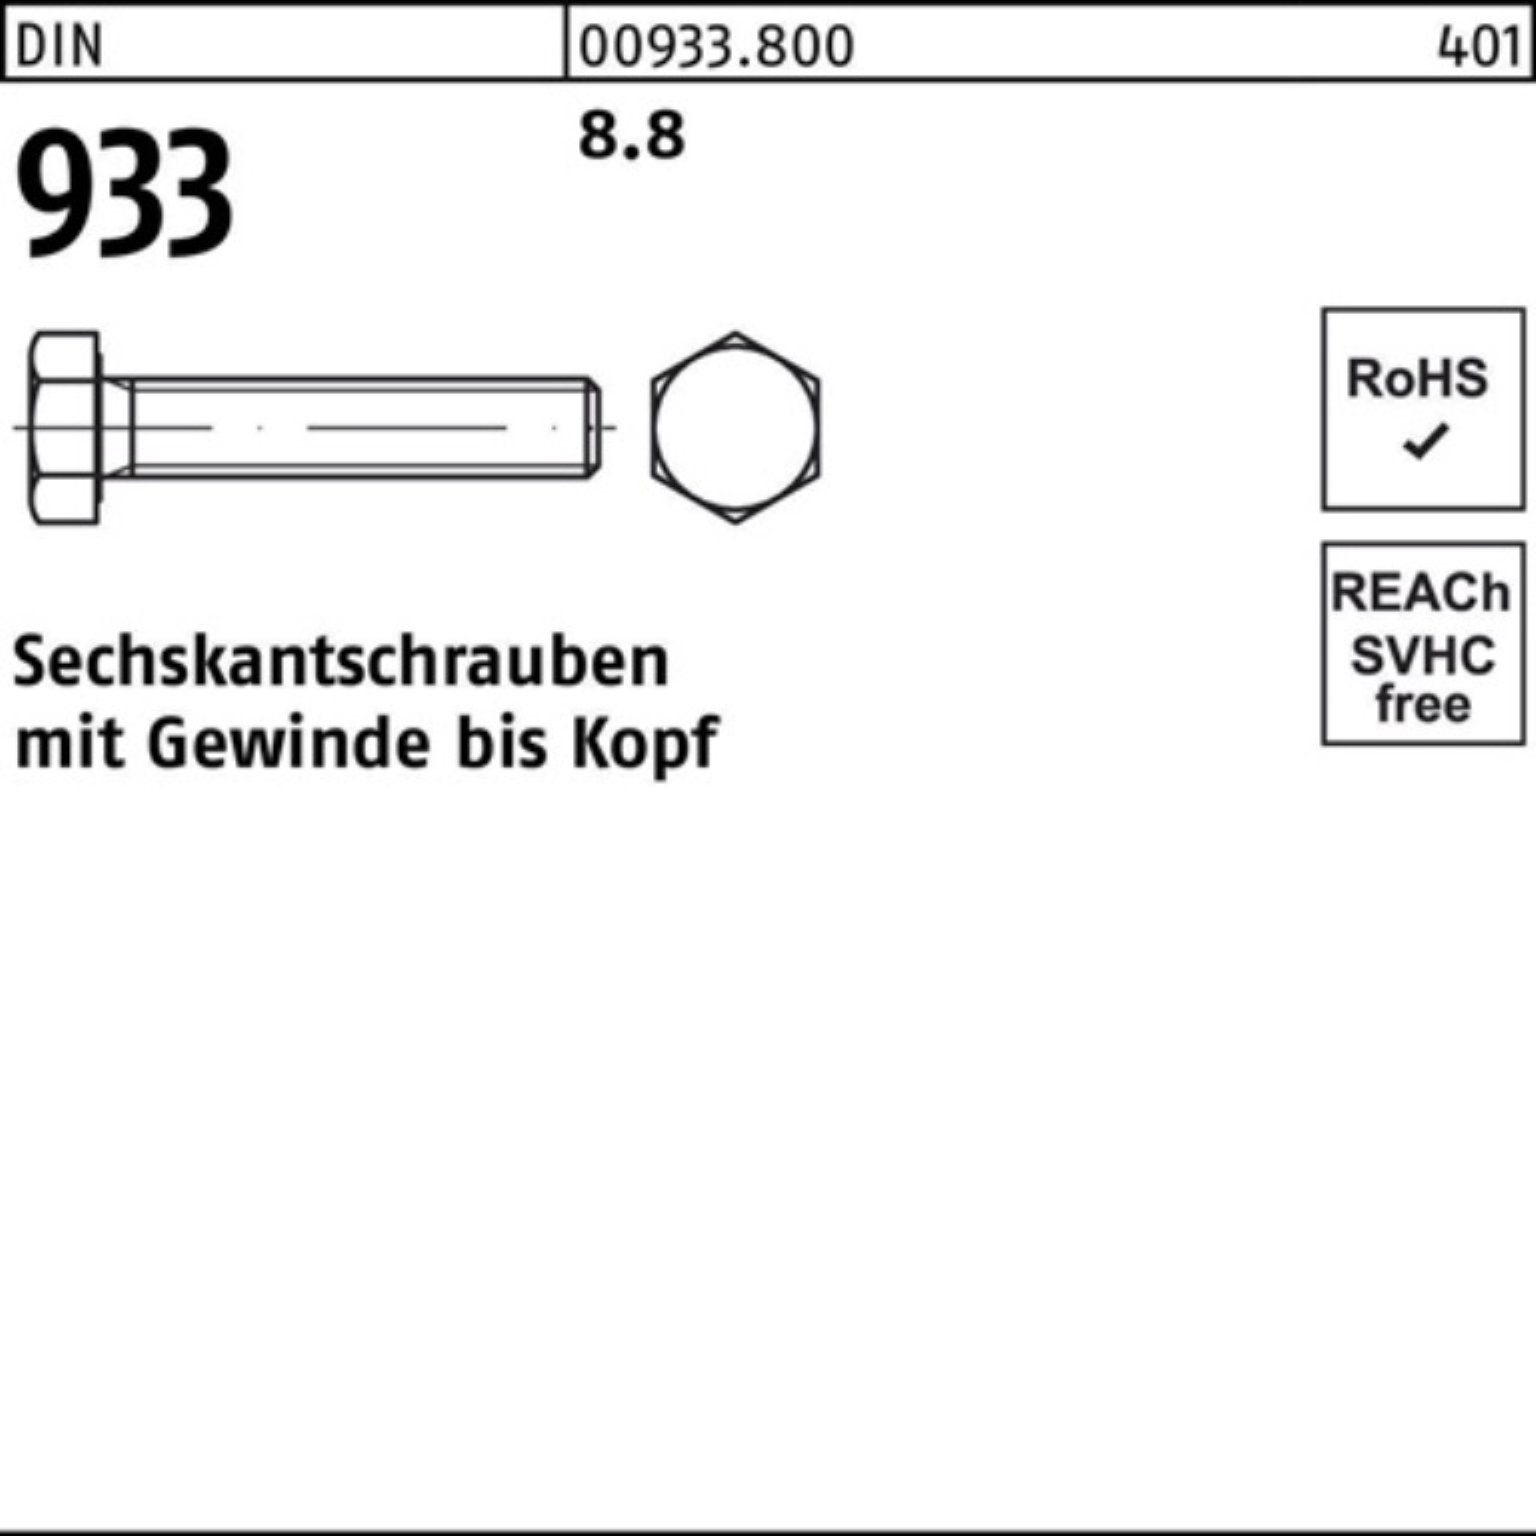 Reyher Sechskantschraube 100er Pack Sechskantschraube 933 DIN 8.8 933 M42x Stück VG DIN 140 1